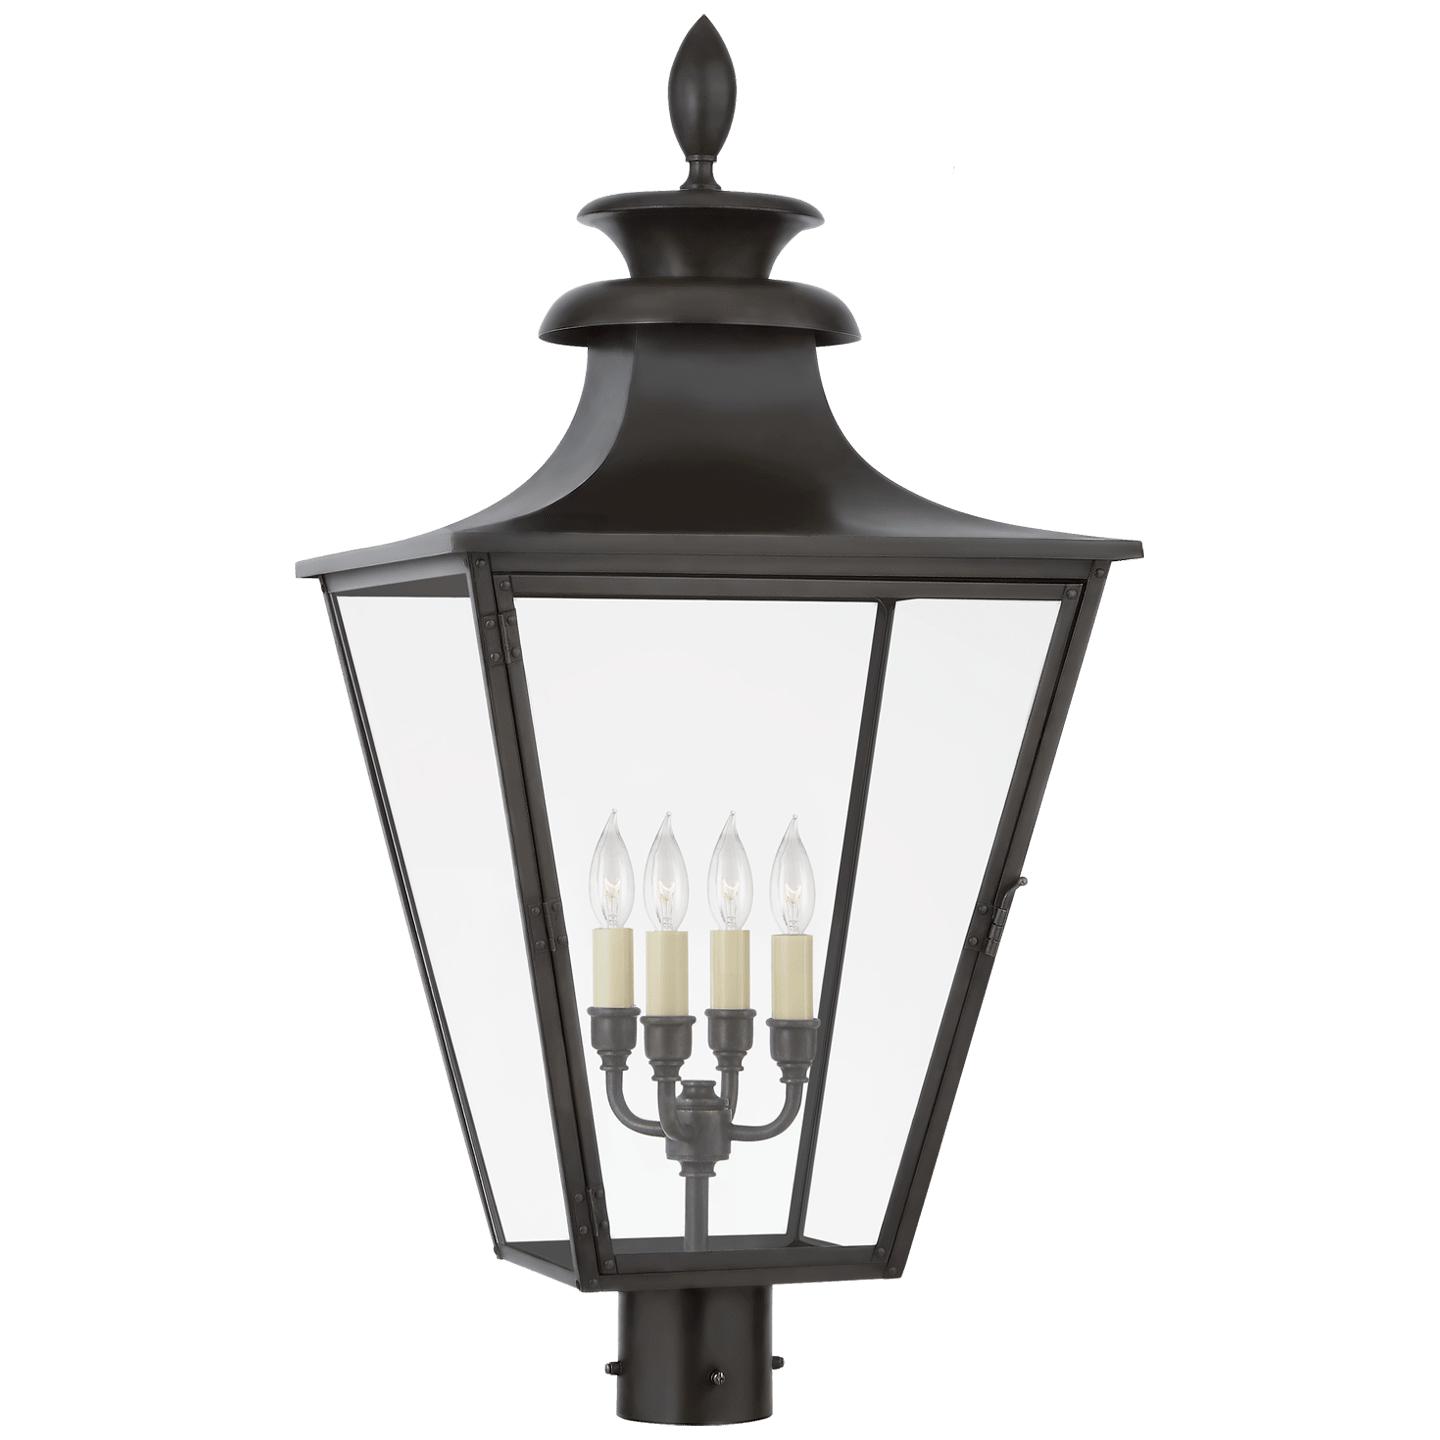 Купить Уличный фонарь Albermarle Post Light в интернет-магазине roooms.ru